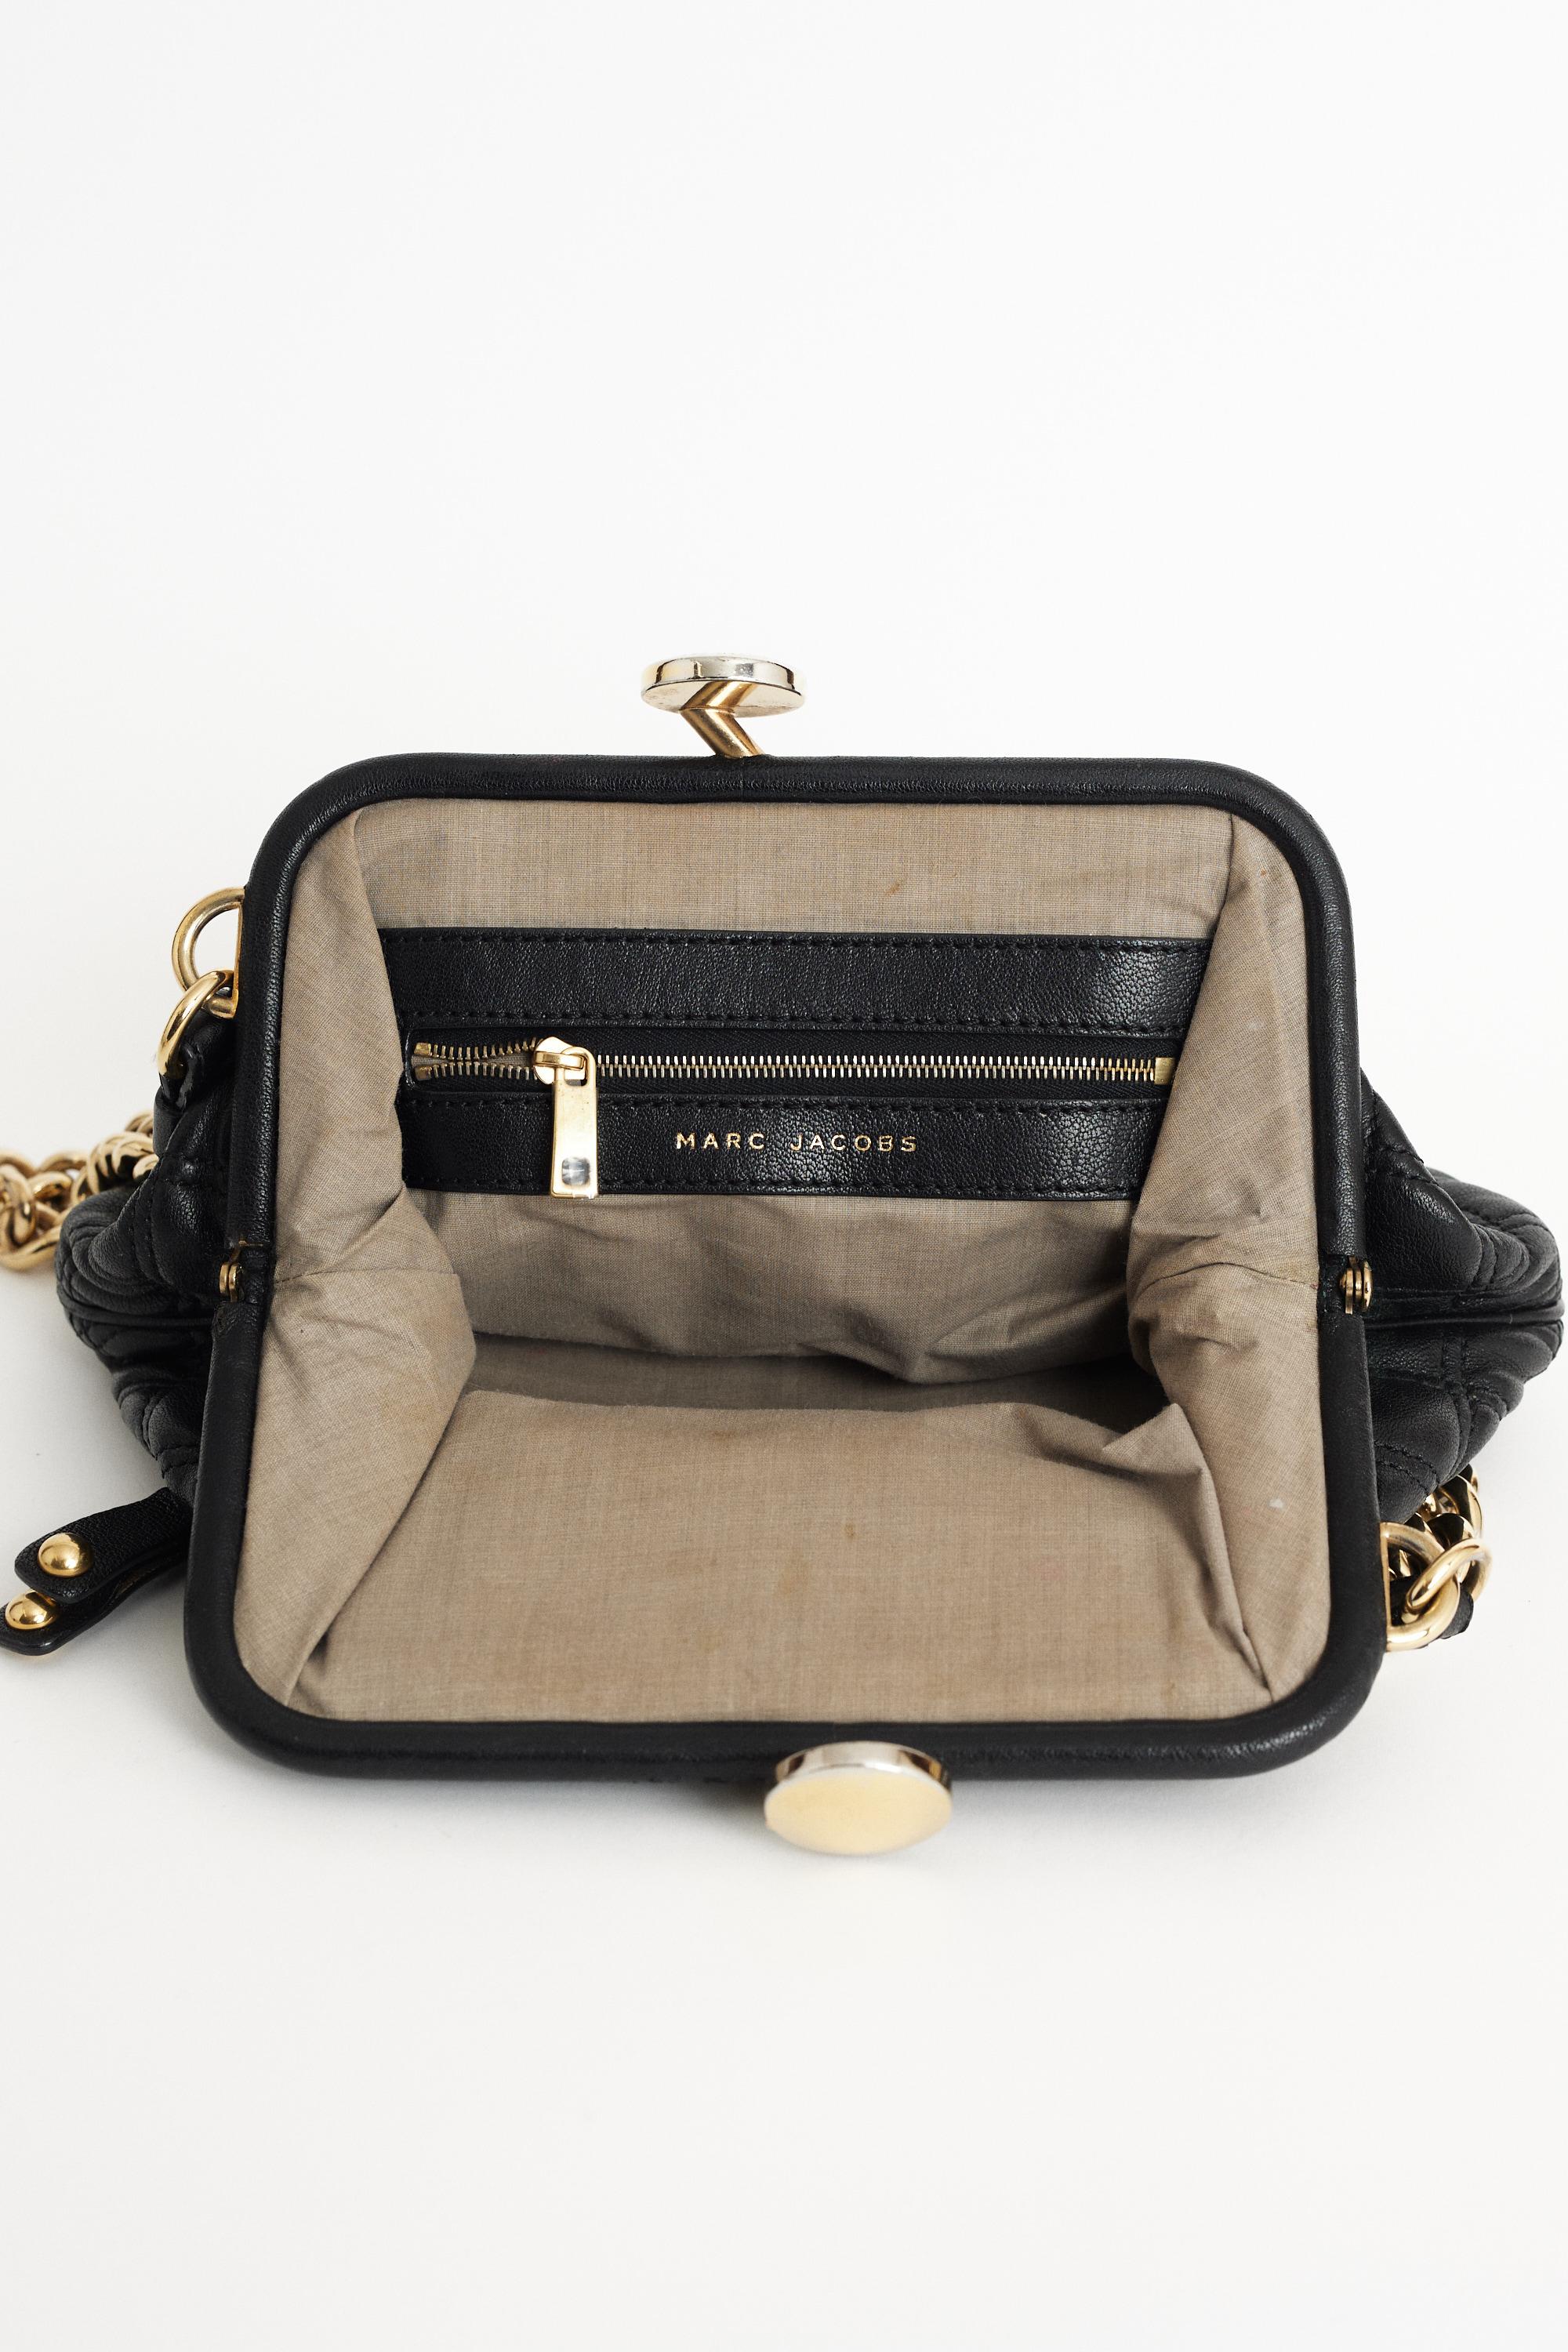 Women's Marc Jacobs 2009 Stam Purse Bag For Sale